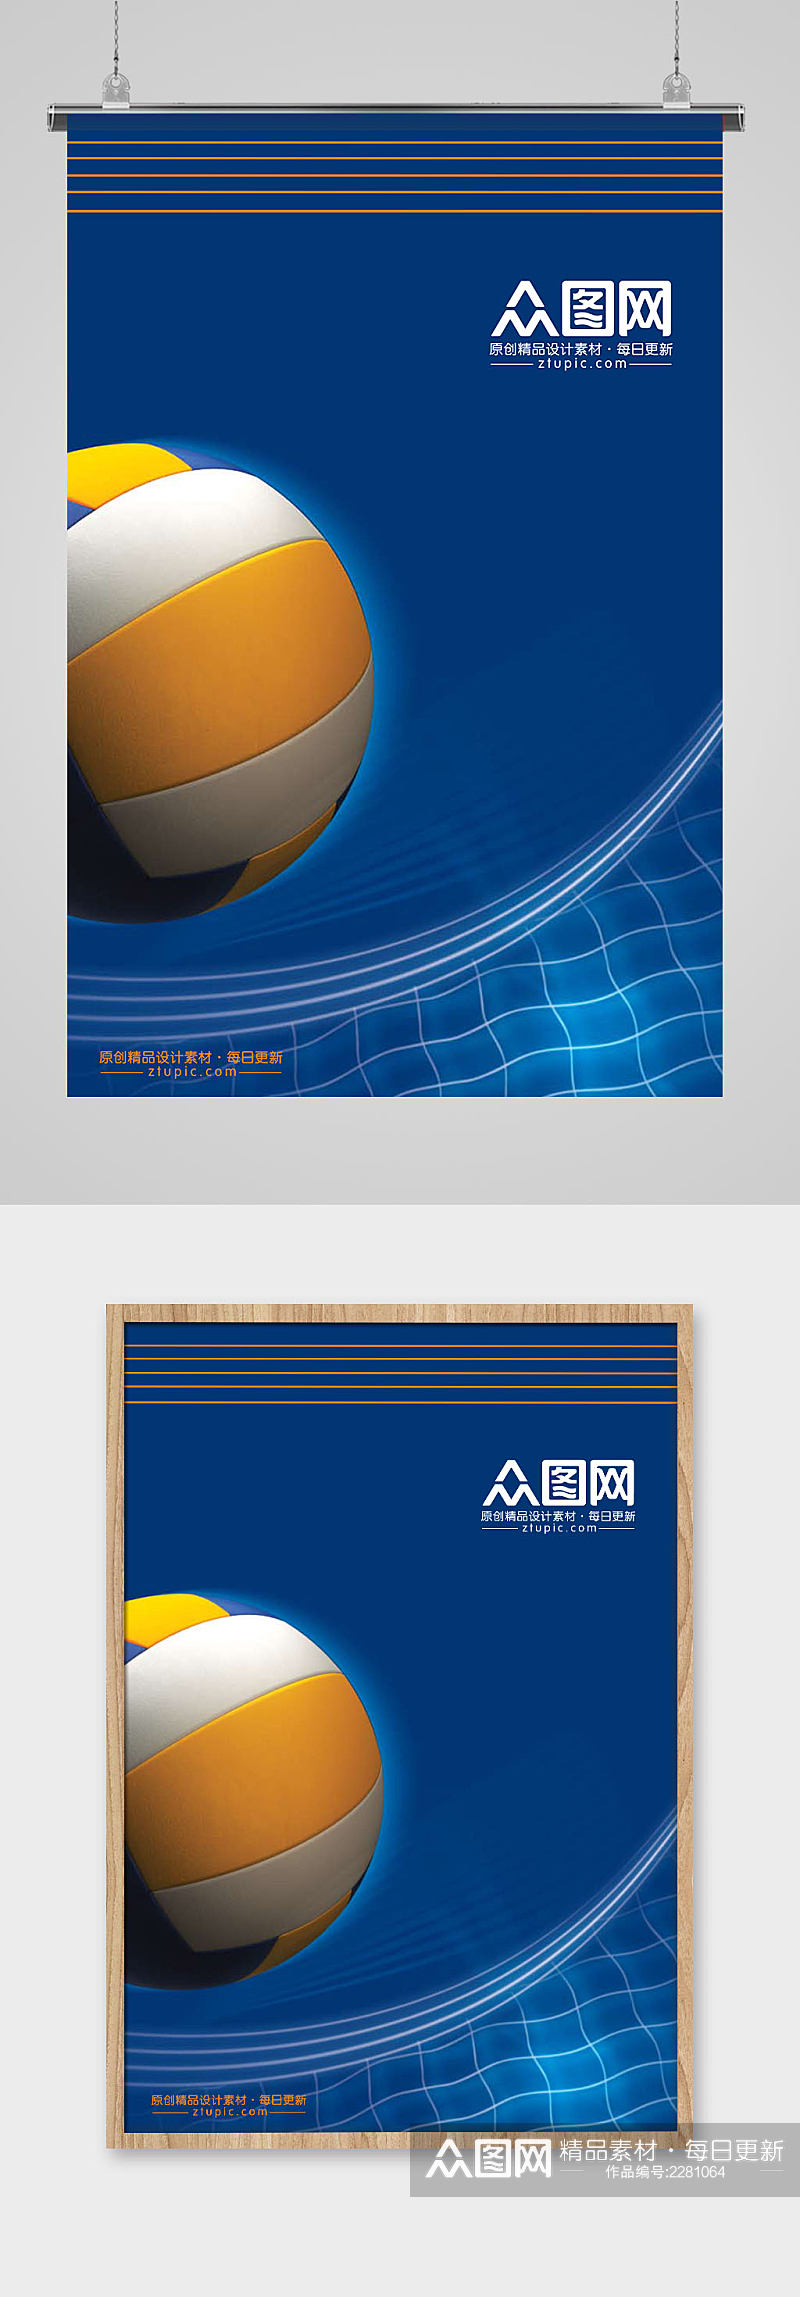 蓝色排球球科技展板素材